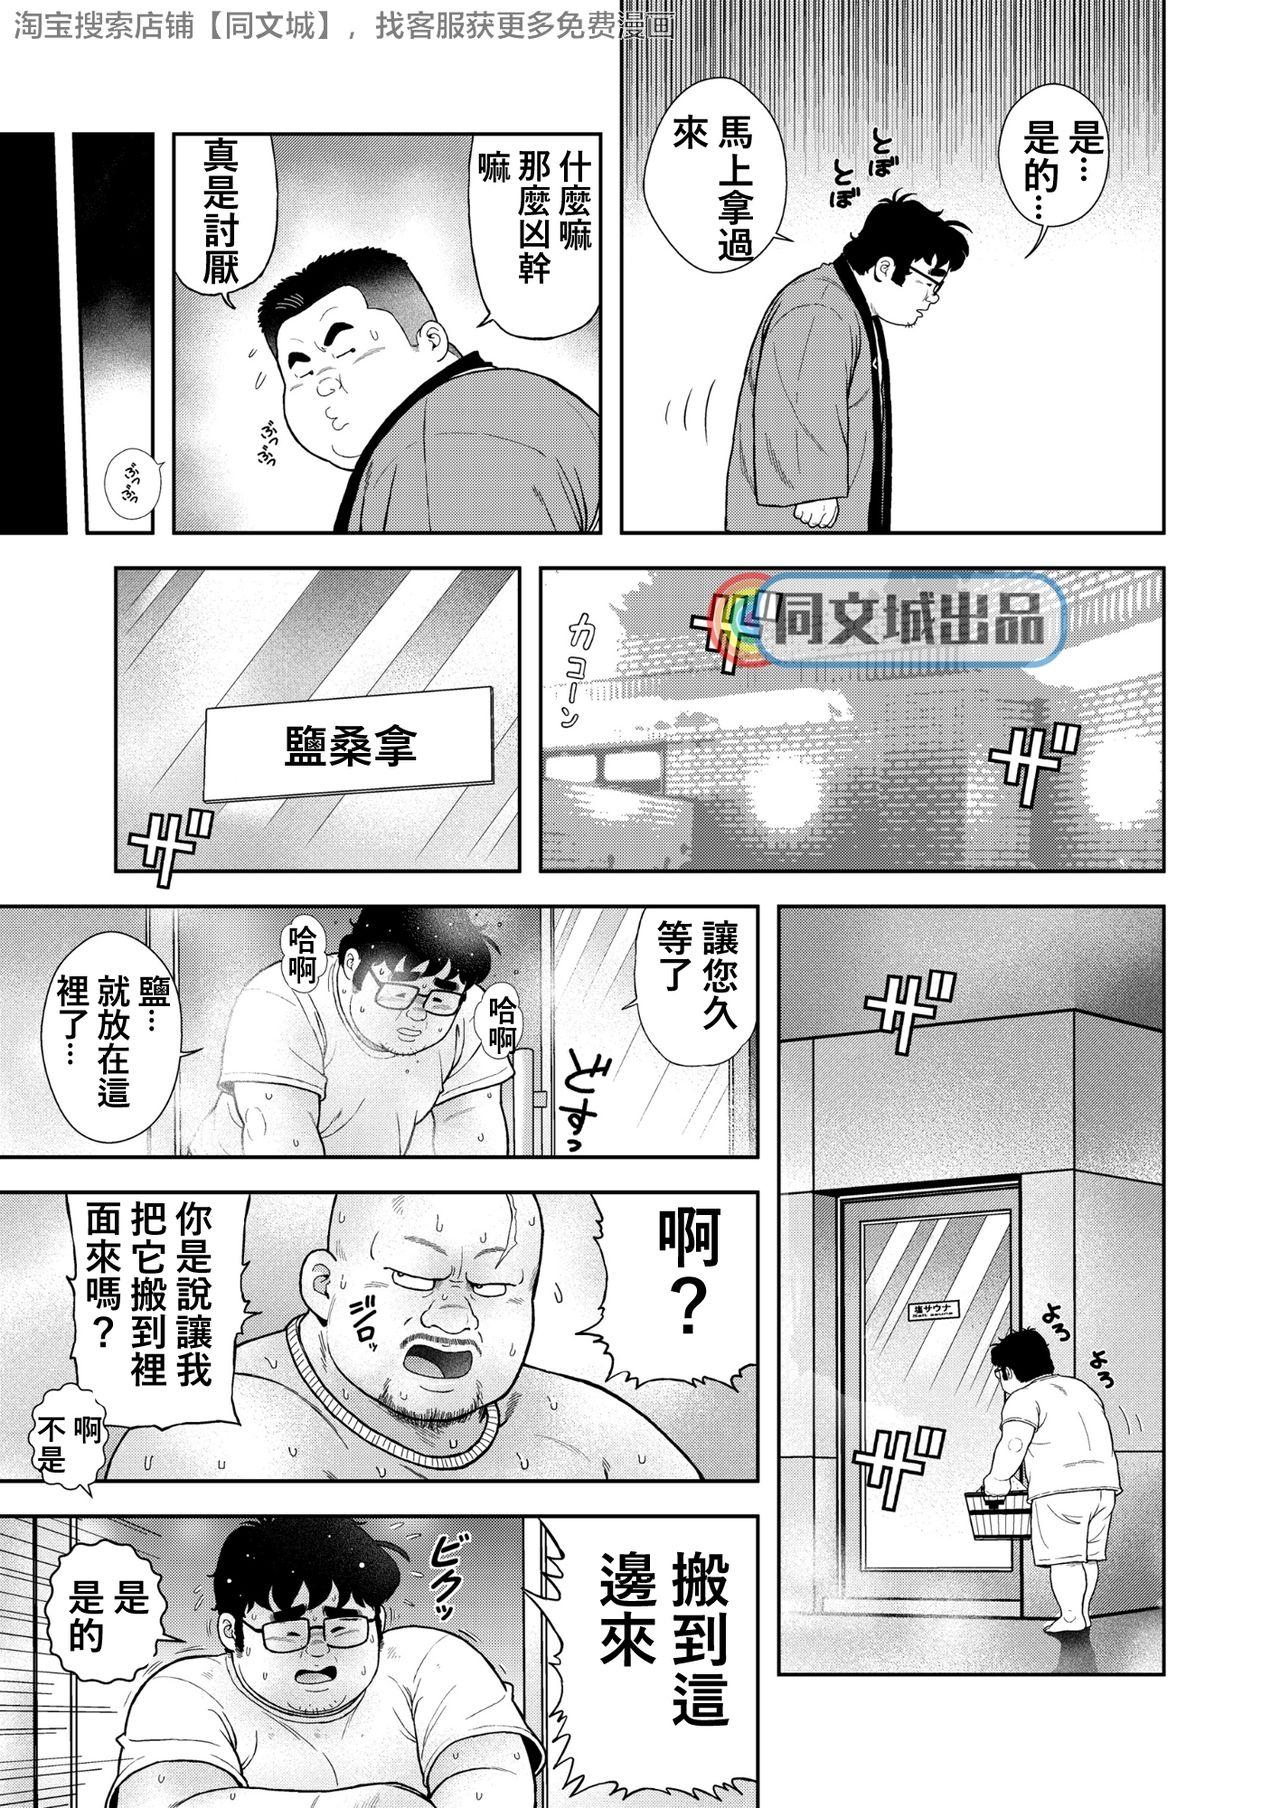 Bitch Kunoyu Gohatsume Shinju no Sao Passivo - Page 5